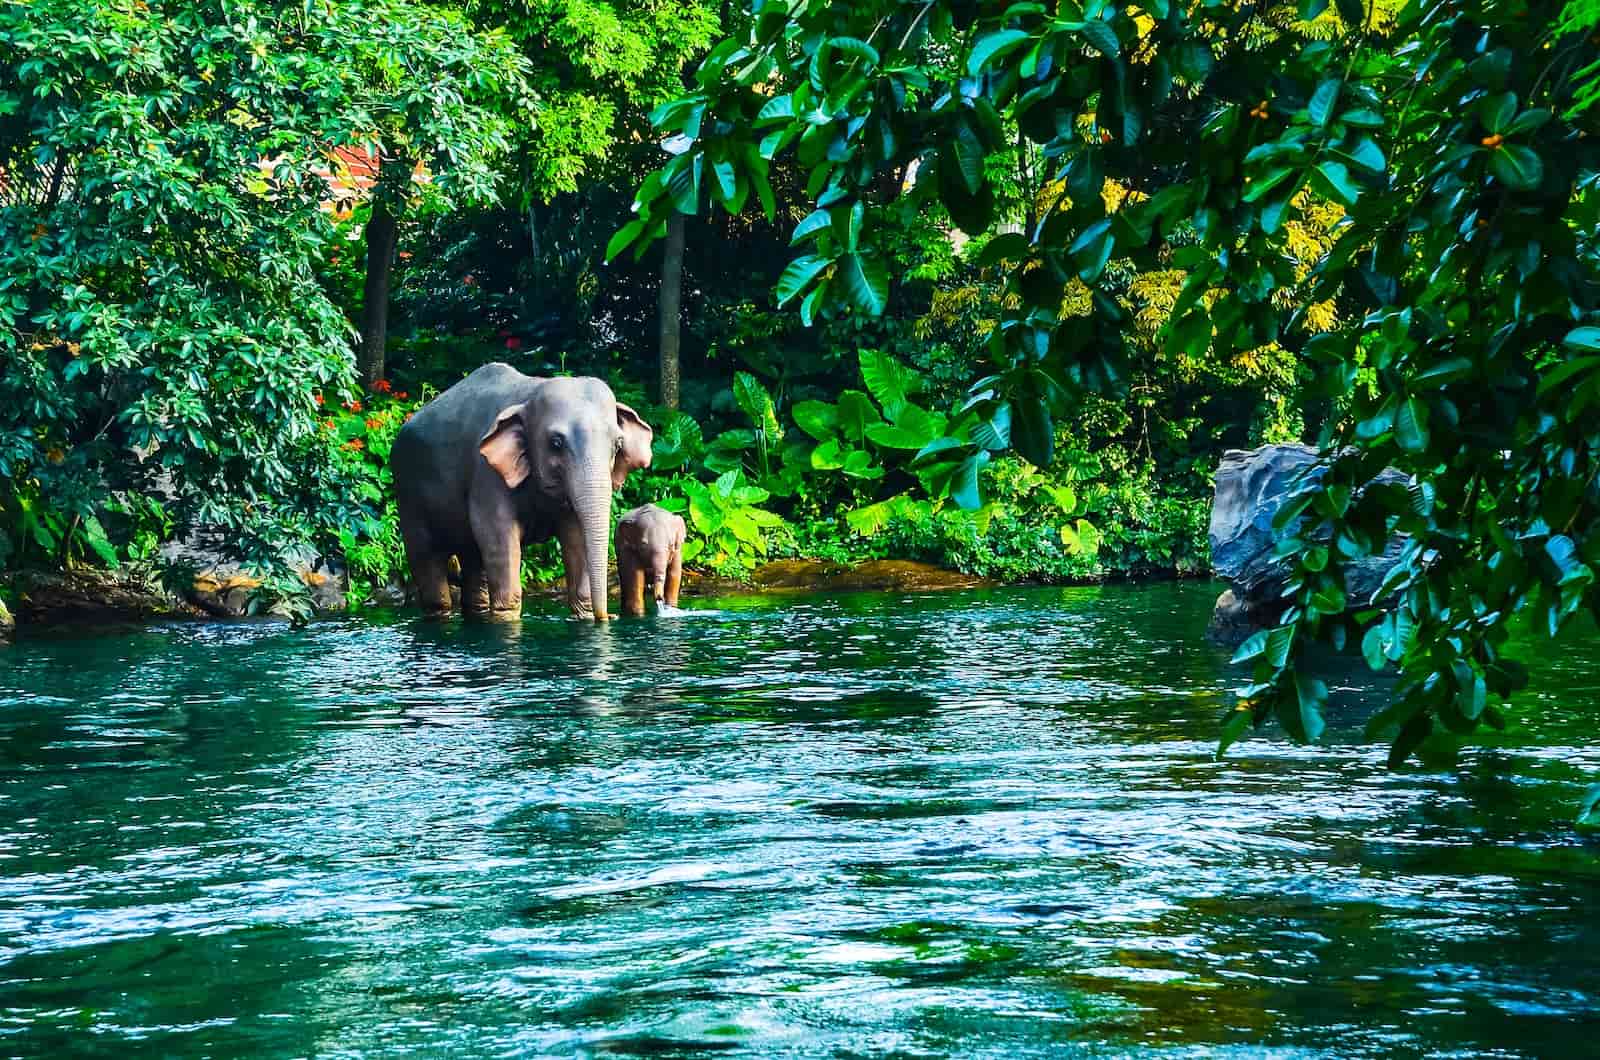 Vườn quốc gia Khao Yai được mệnh danh là thiên đường động vật hoang dã ấn tượng. tour du lịch free & easy Thái Lan